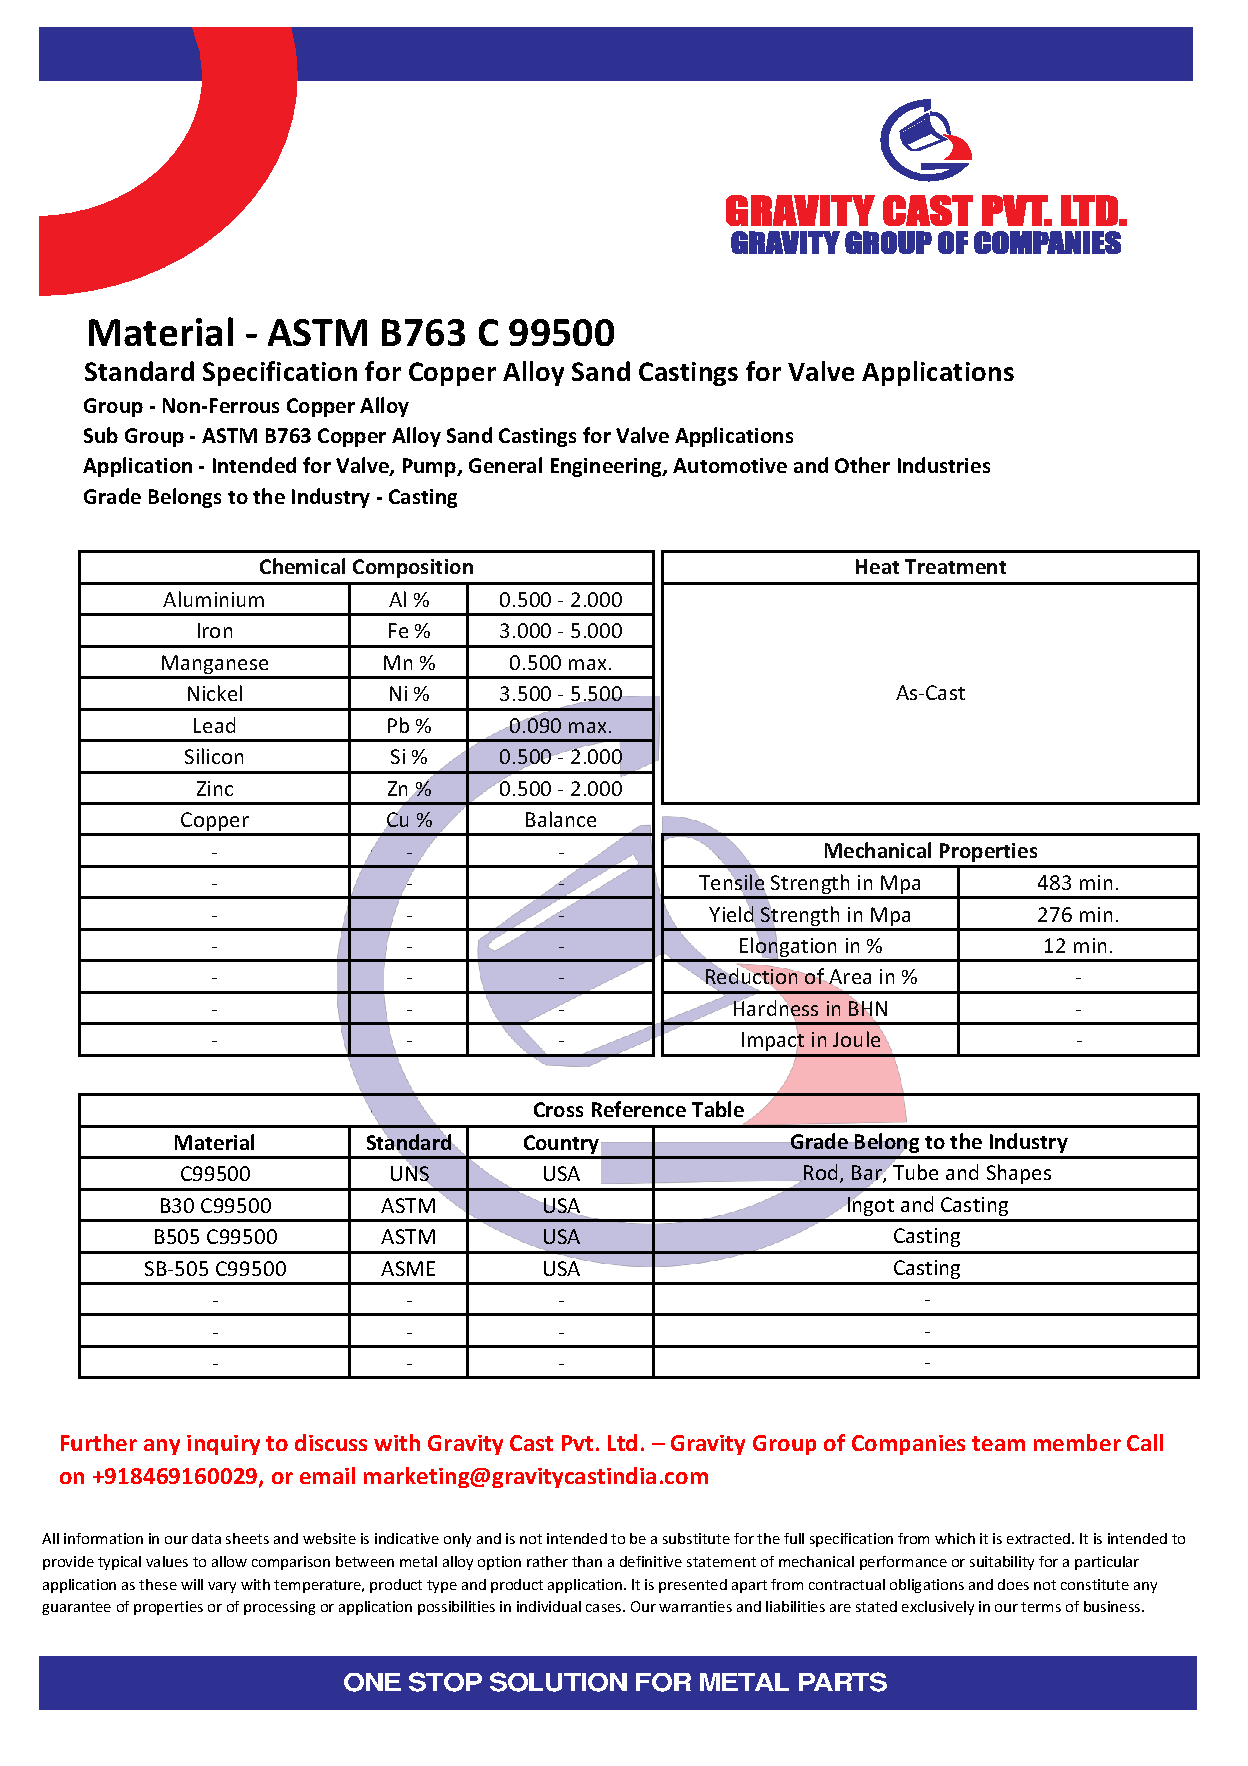 ASTM B763 C 99500.pdf